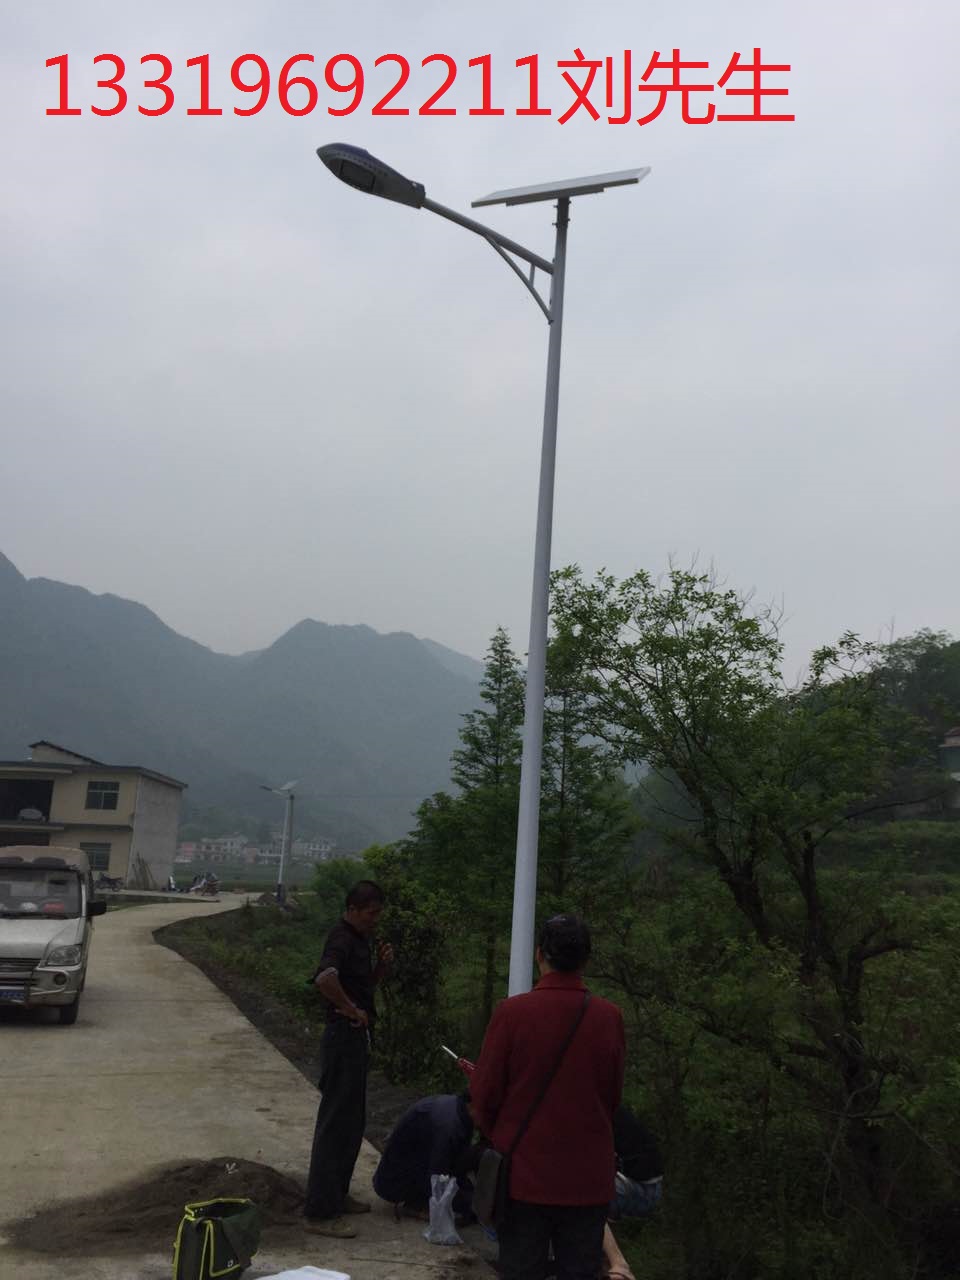 供应用于道路照明|农村照明|小区照明太阳能路灯厂家/供应邵东县太阳能图片